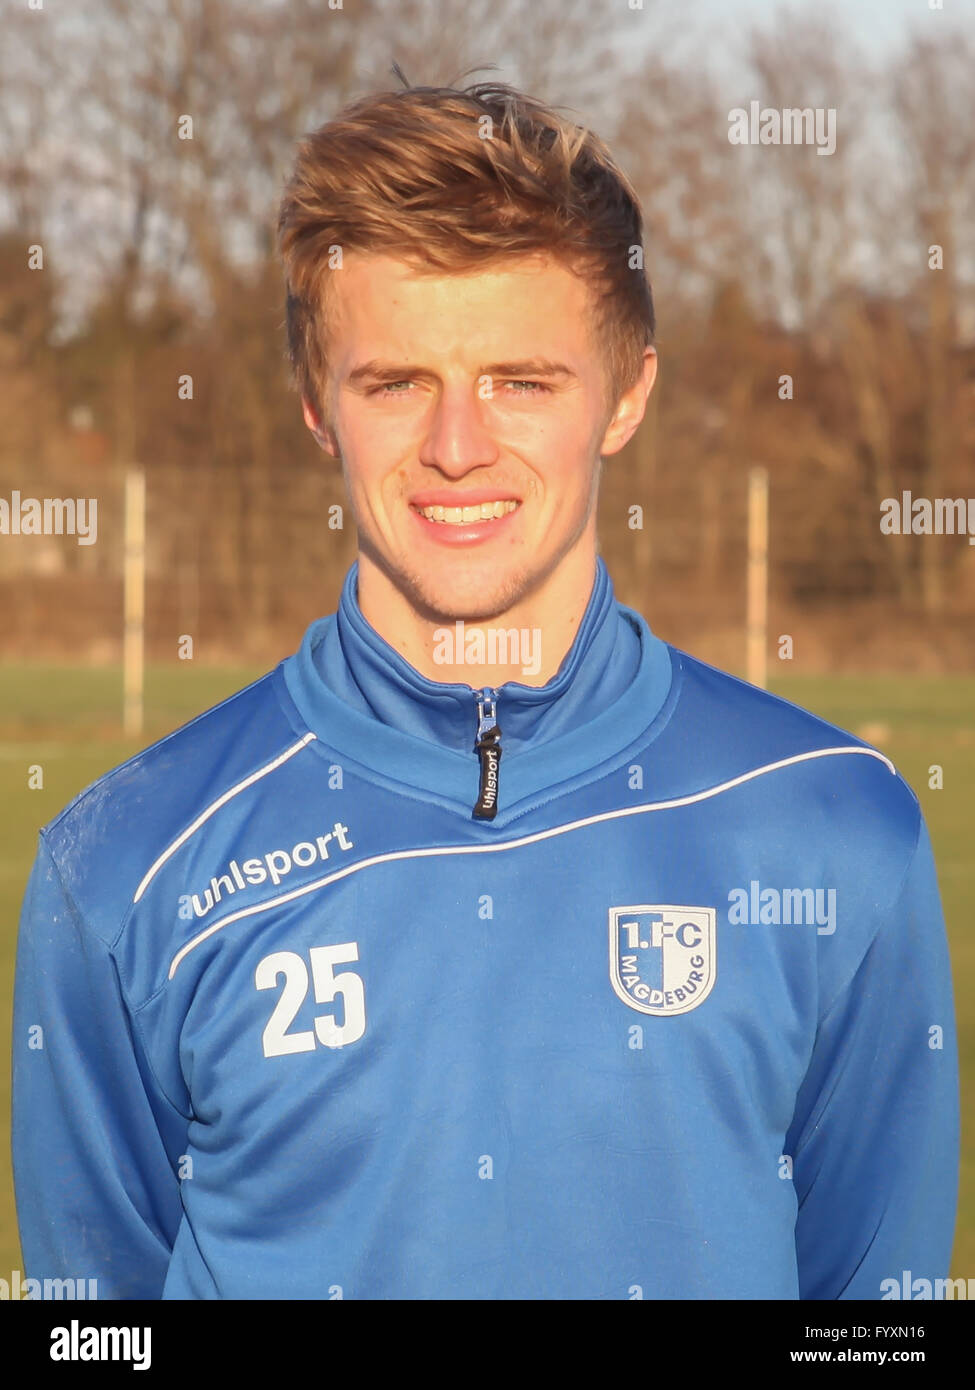 Sebastian Ernst (1.FC Magdeburg) Stock Photo